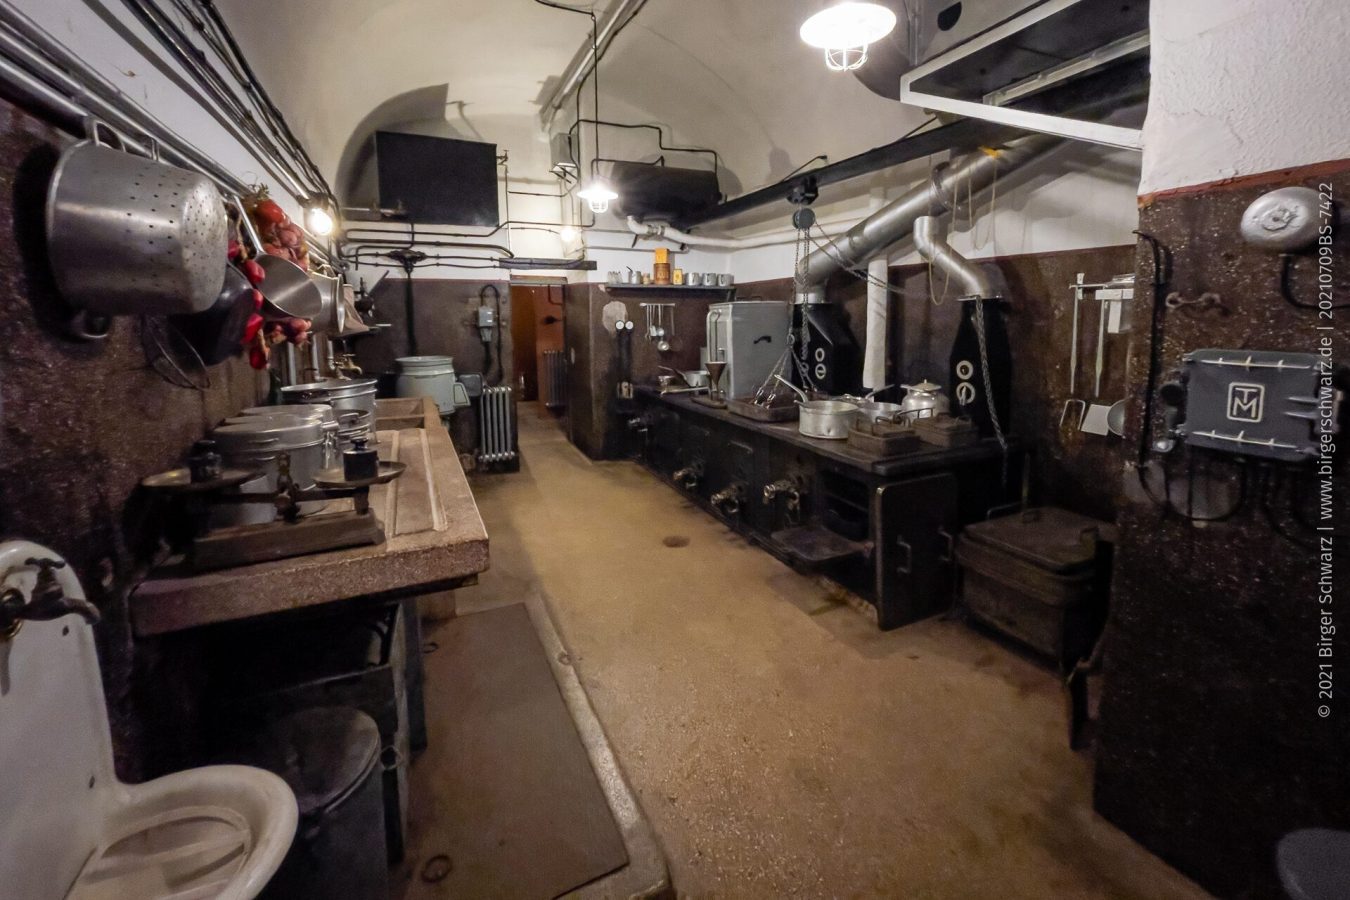 Küche  - Die Küche des Bunkers versorgte die 175 Mann Besatzung der Festung mit Essen. - Bunker, Département Moselle, Europa, Fort Casso, Frankreich, Maginot Line, Region, Urlaub, Apple iPhone 12 Pro